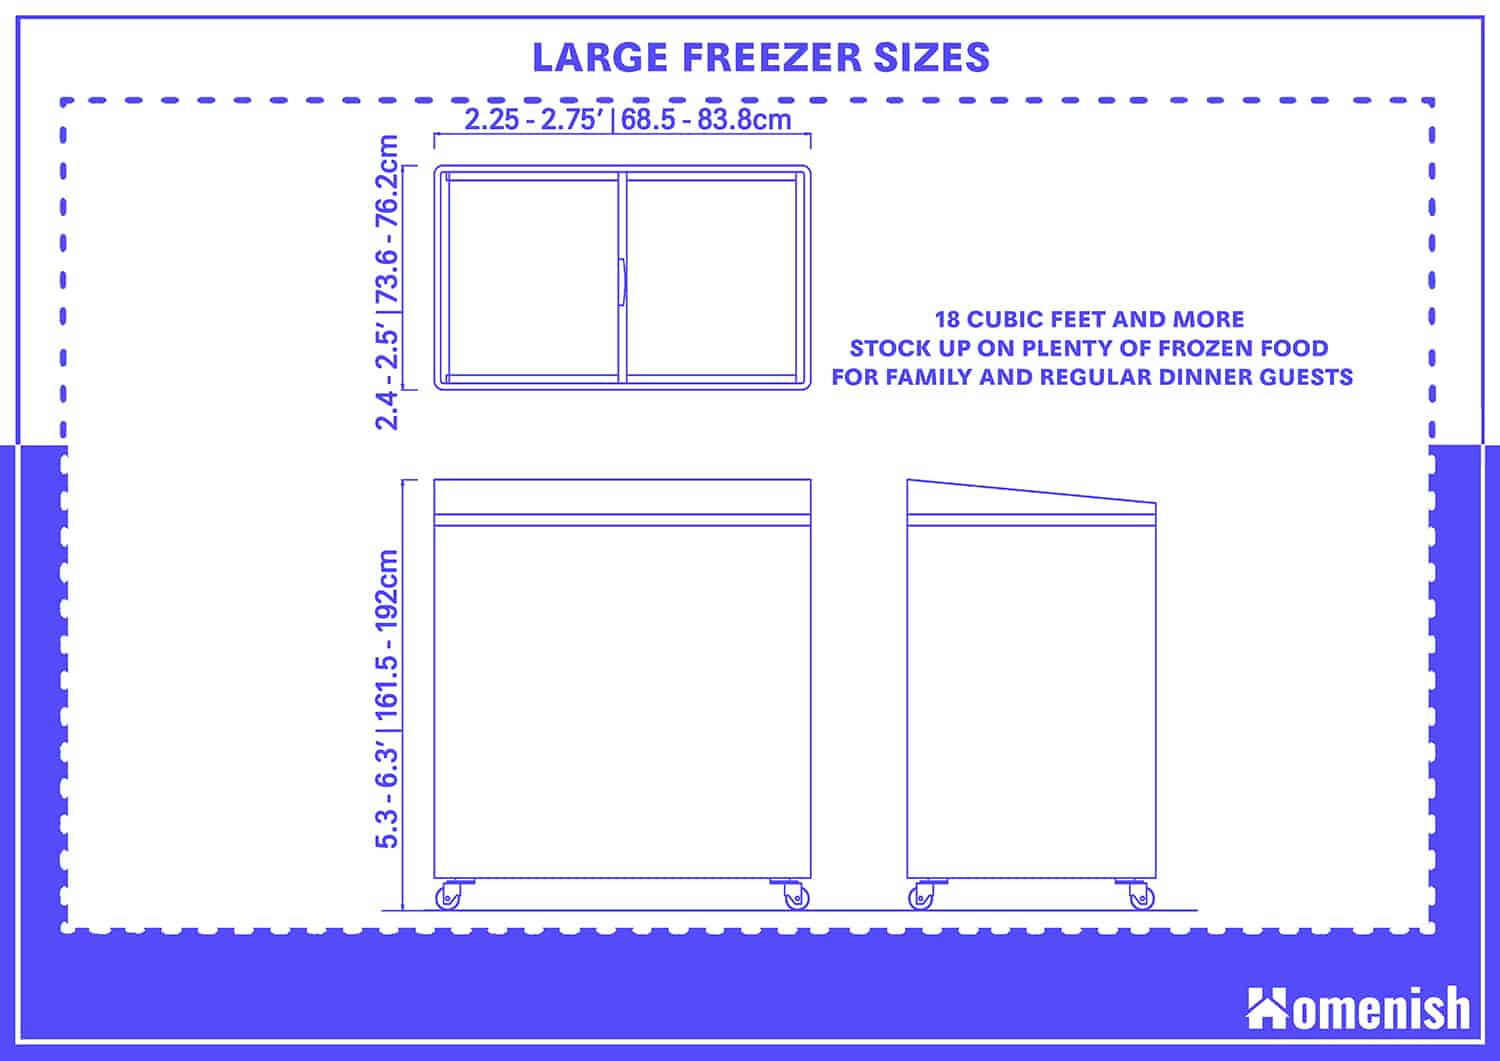 Large-sized freezers